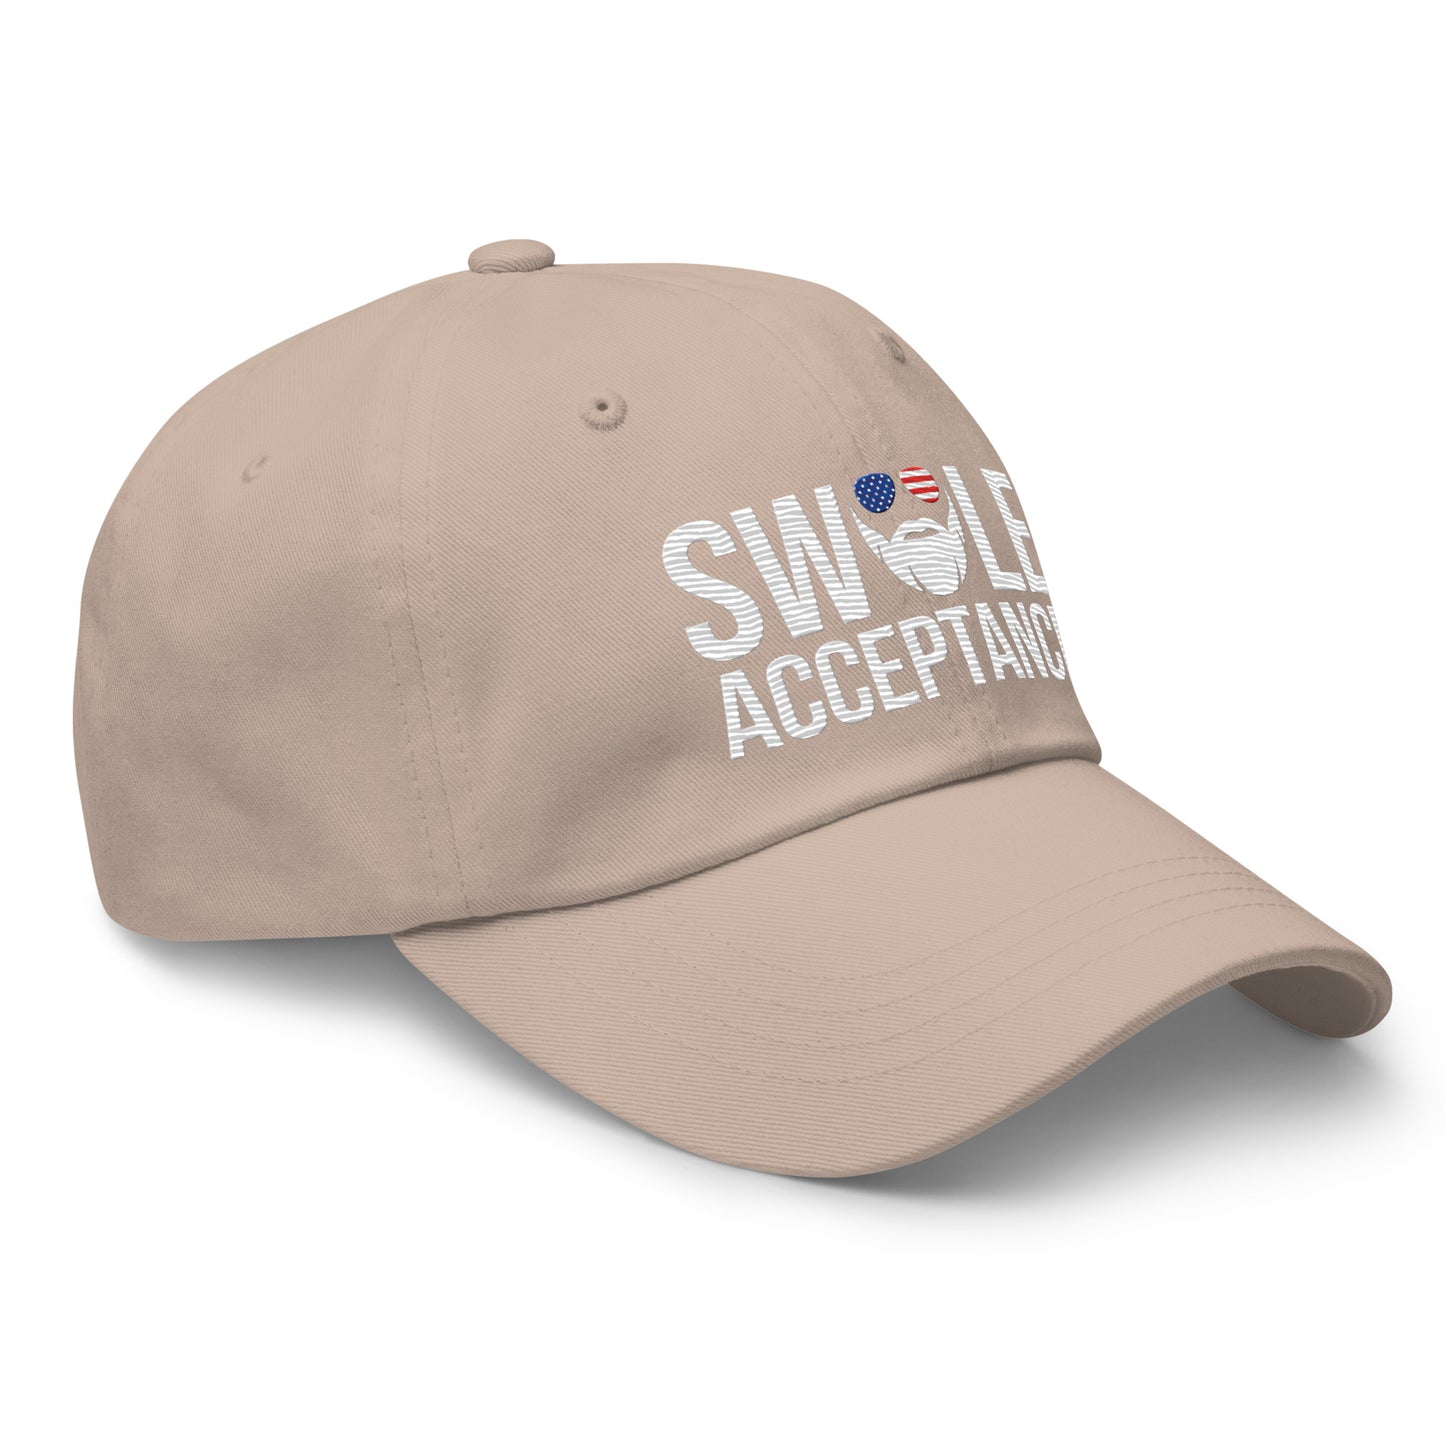 Swole Acceptance Dad Hat